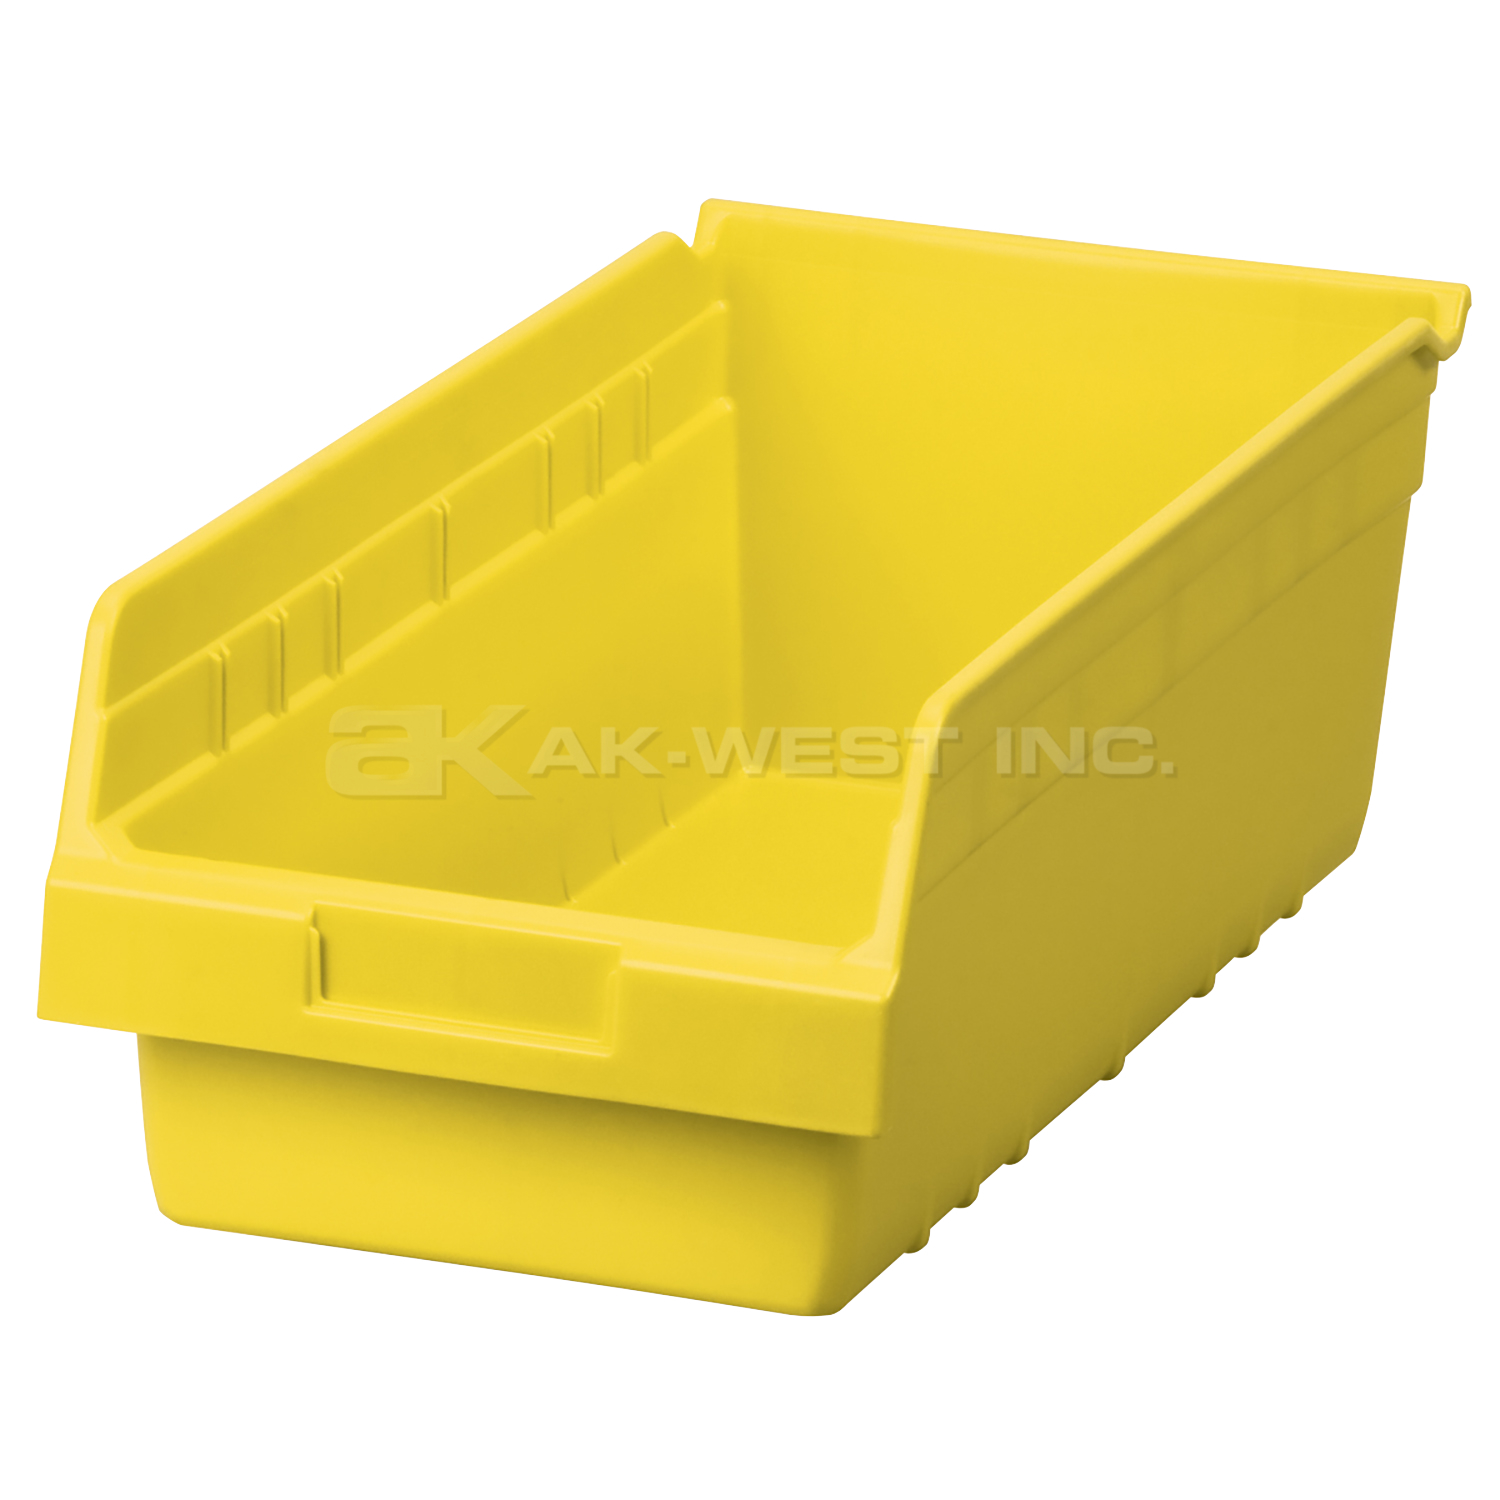 Yellow, 17-7/8" x 8-3/8" x 6" Shelf Bin (8 Per Carton)